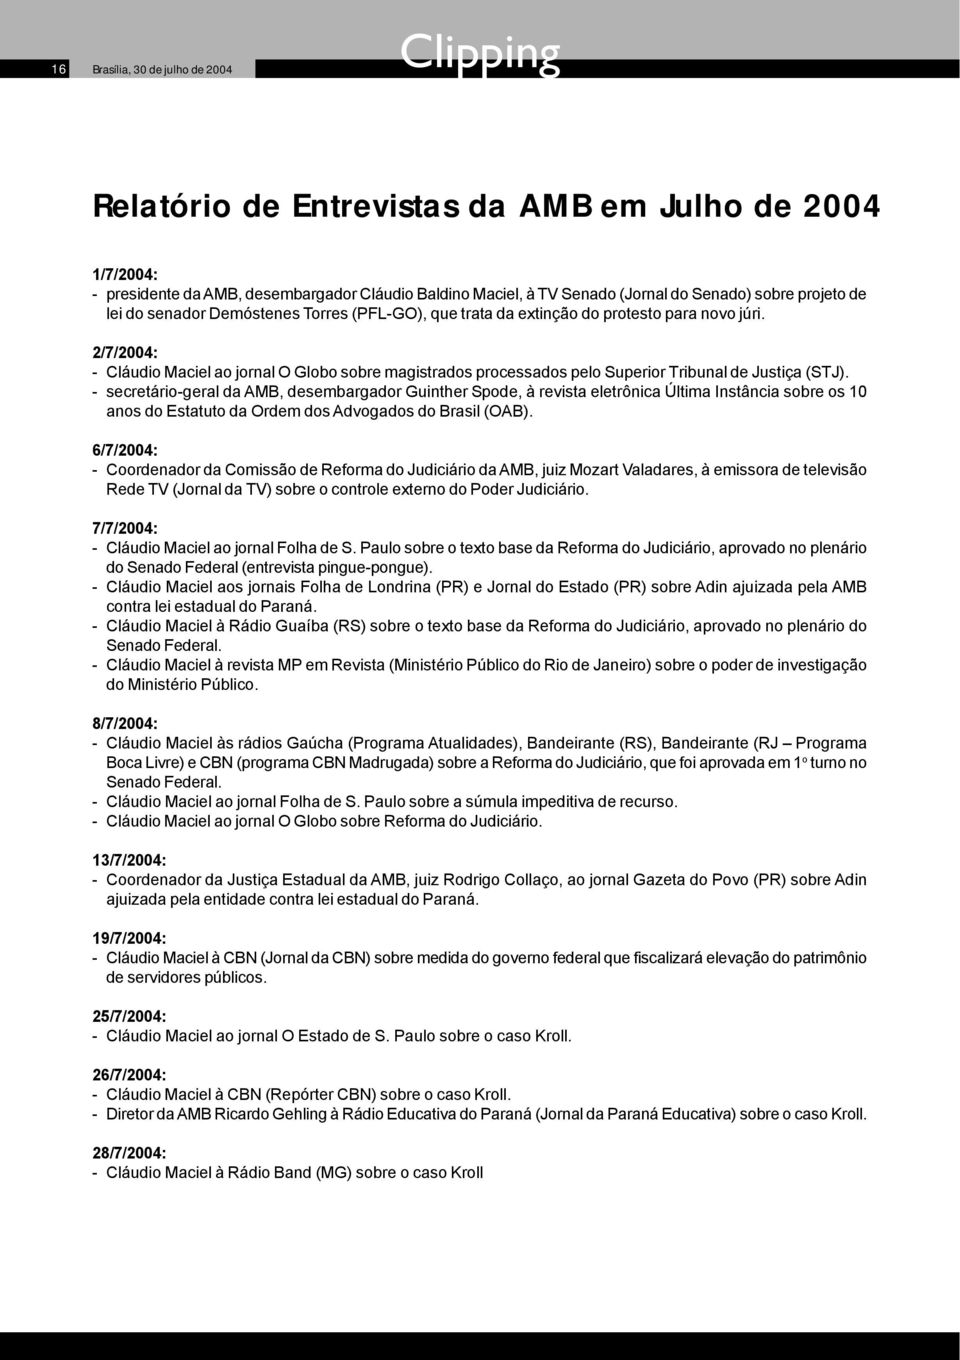 2/7/2004: - Cláudio Maciel ao jornal O Globo sobre magistrados processados pelo Superior Tribunal de Justiça (STJ).